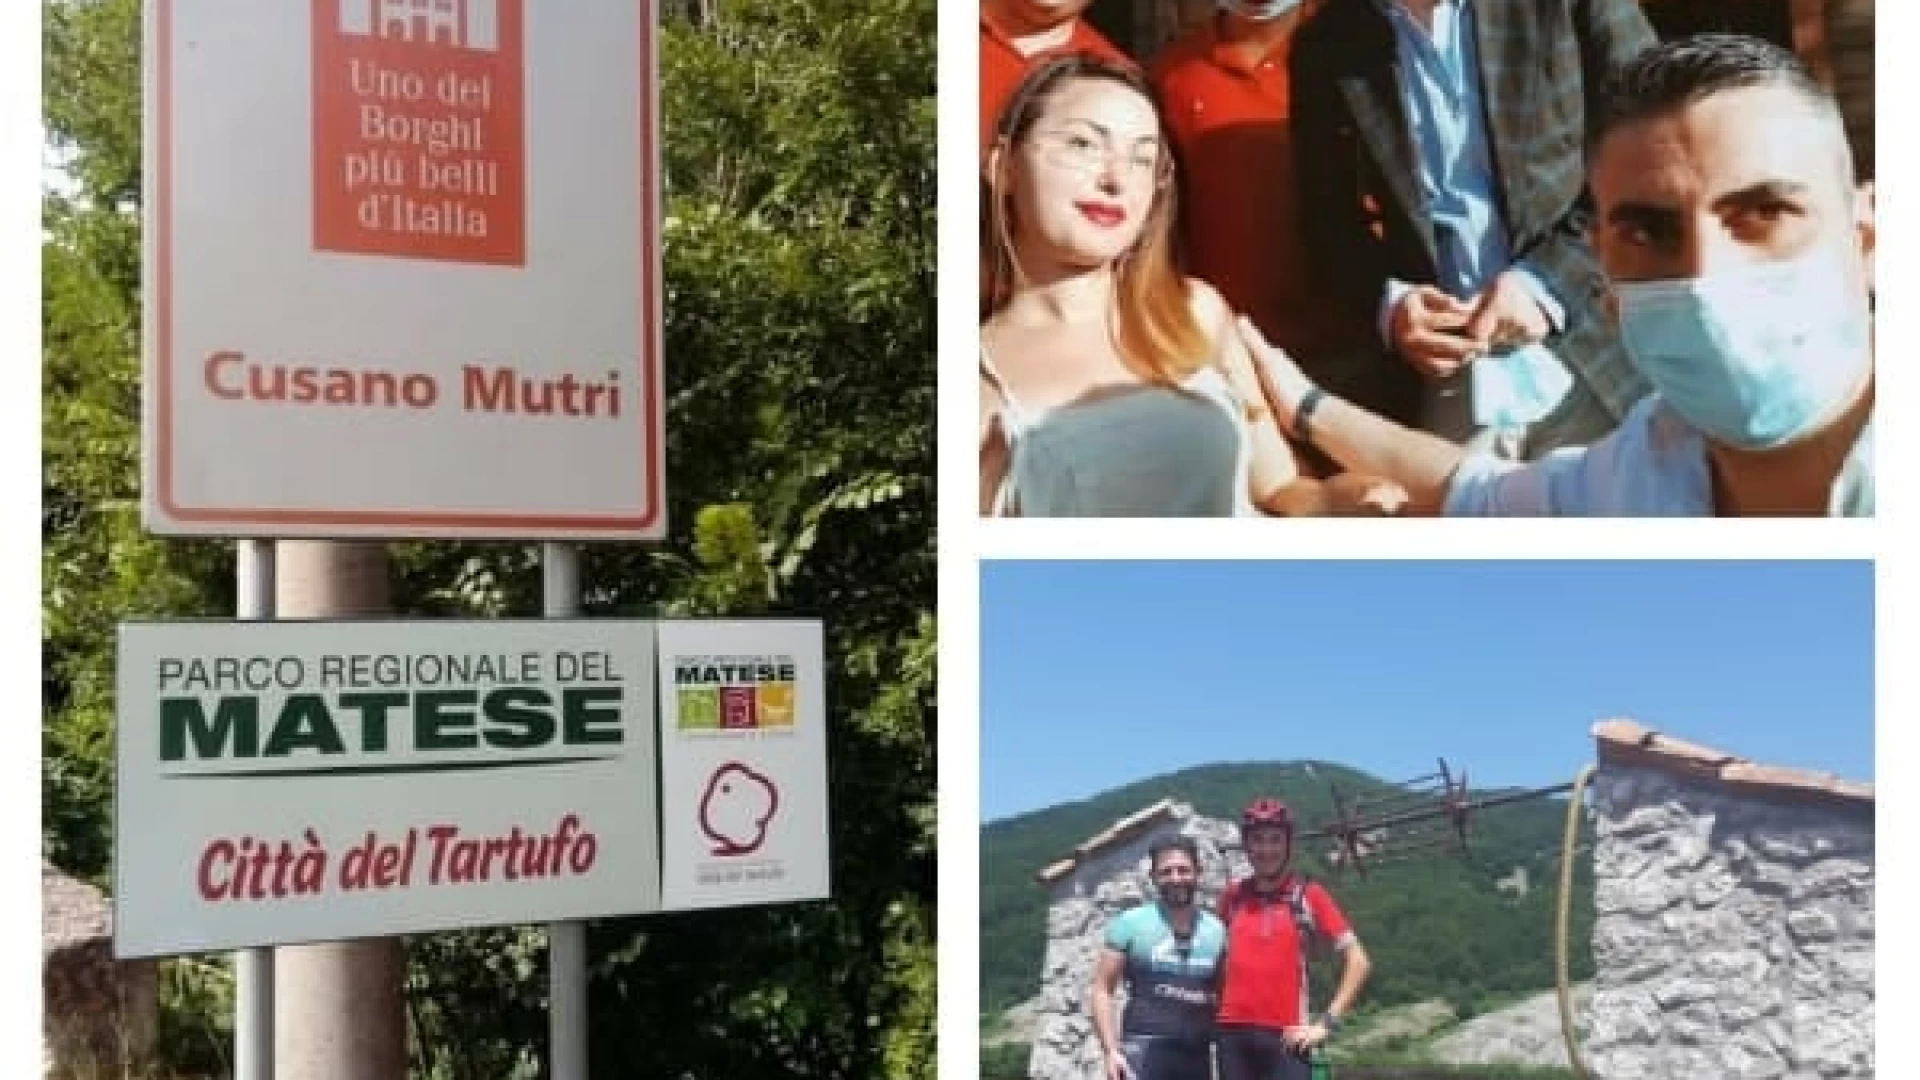 Il Parco Regionale del Matese tra Città del Tartufo, accesso facile per i disabili e turismo sportivo